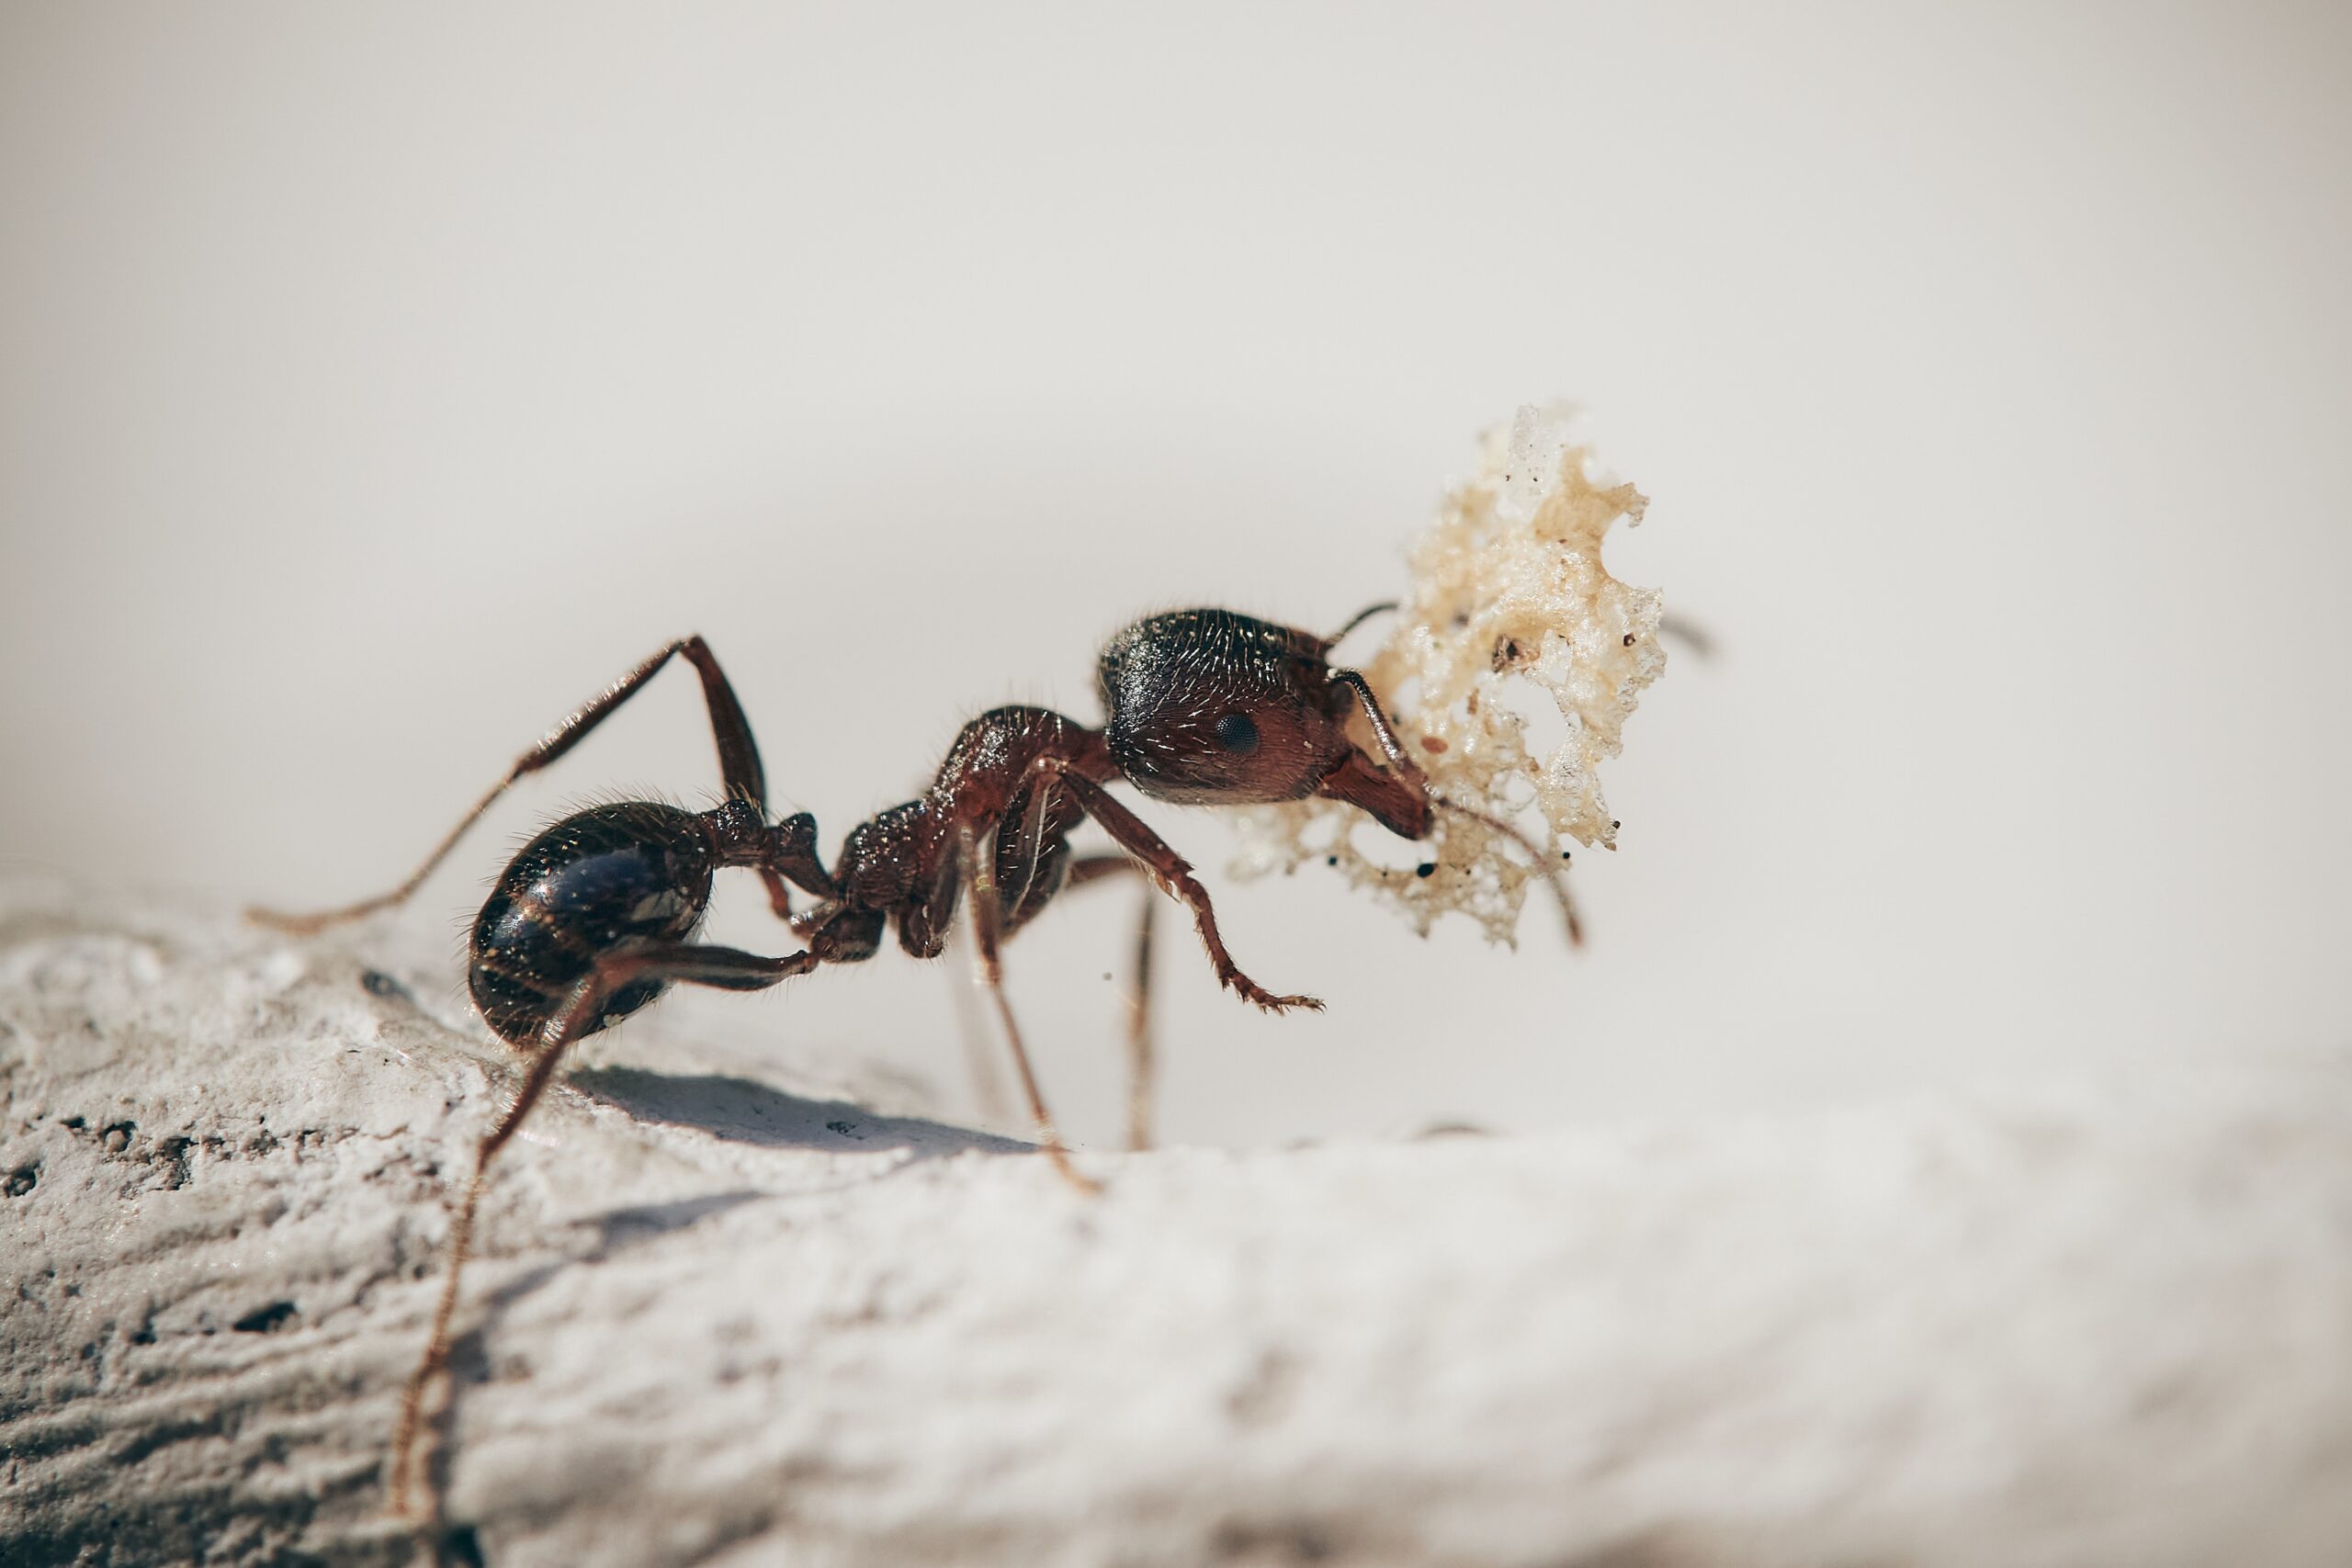 Formigas podem escapar de prisão sem planejamento, aponta pesquisa